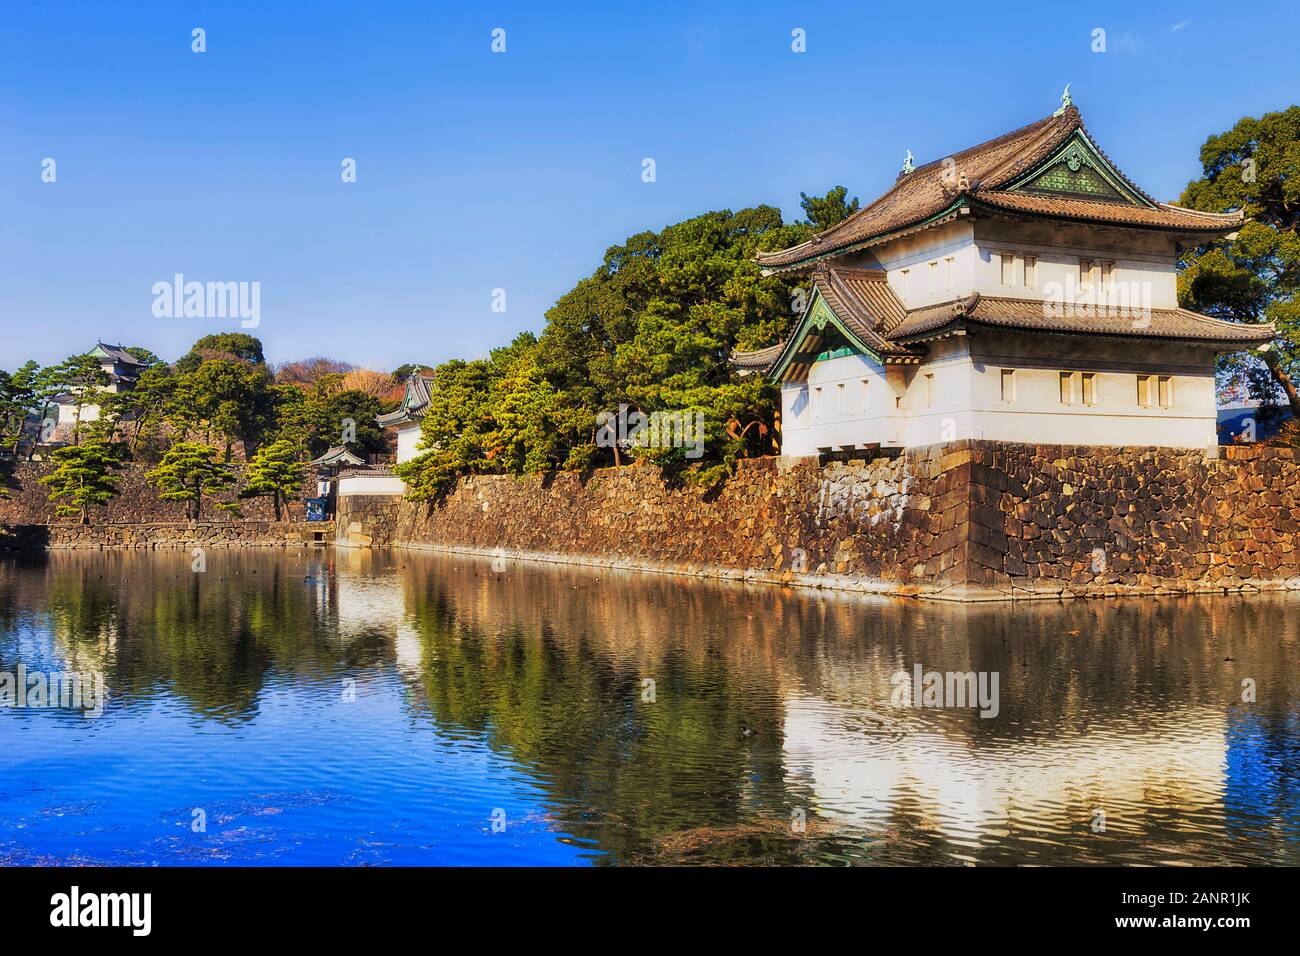 Das Imperial Palace und östlichen Garten in Tokio, Japan. Weiße Ecke Turm auf der Steinmauer in Wassergraben widerspiegelt. Stockfoto